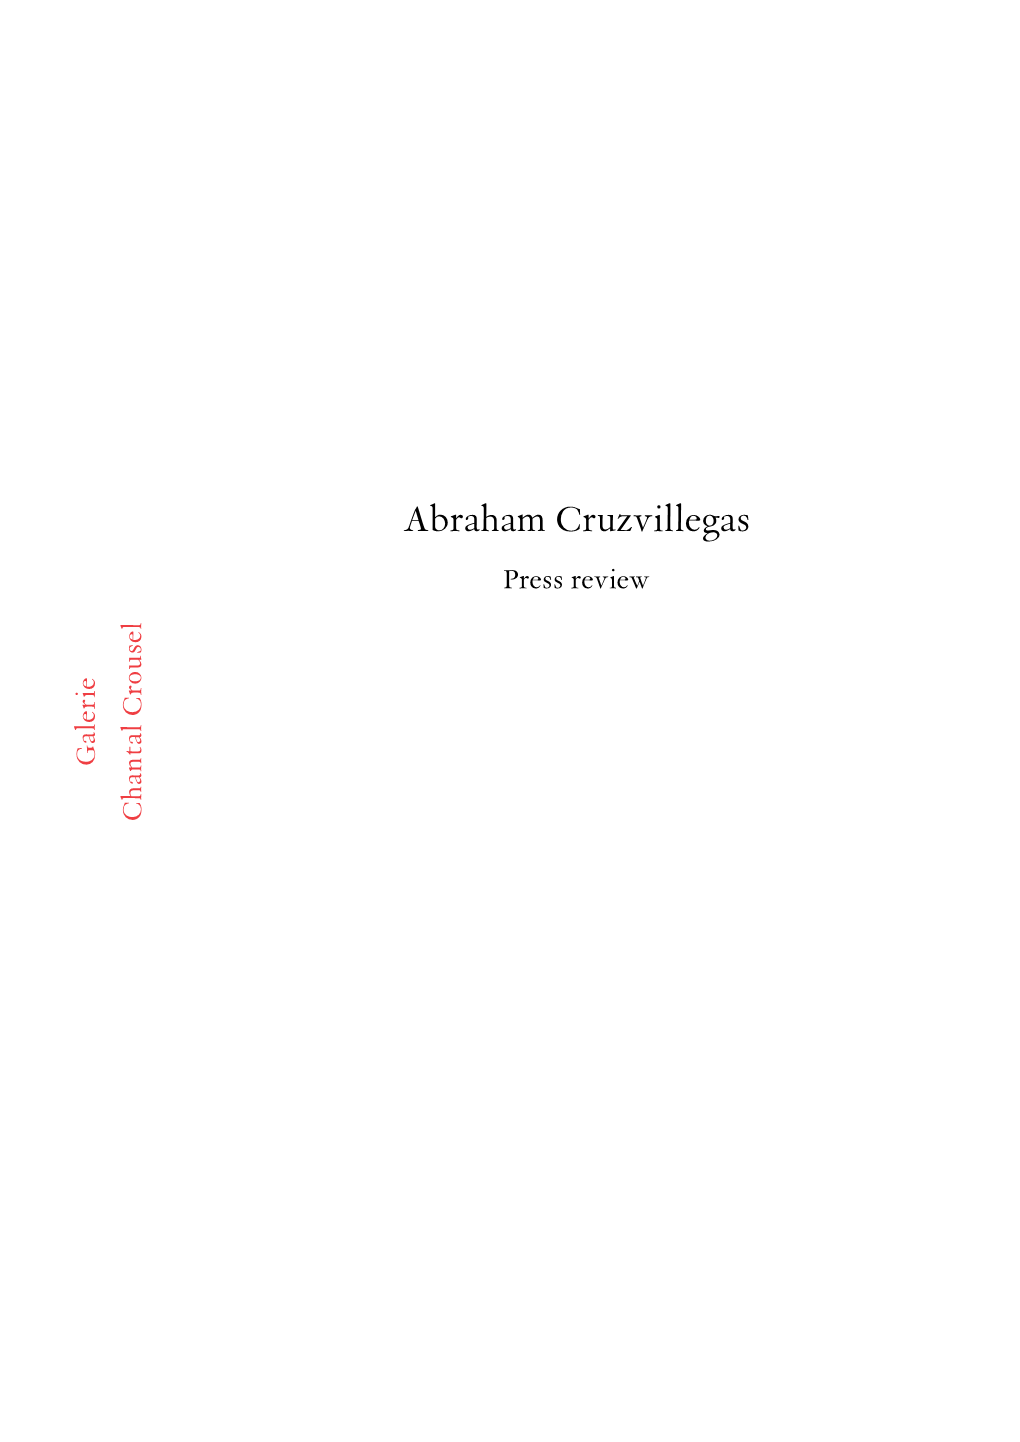 Abraham Cruzvillegas Press Review Galerie Chantal Crousel Robert Preece